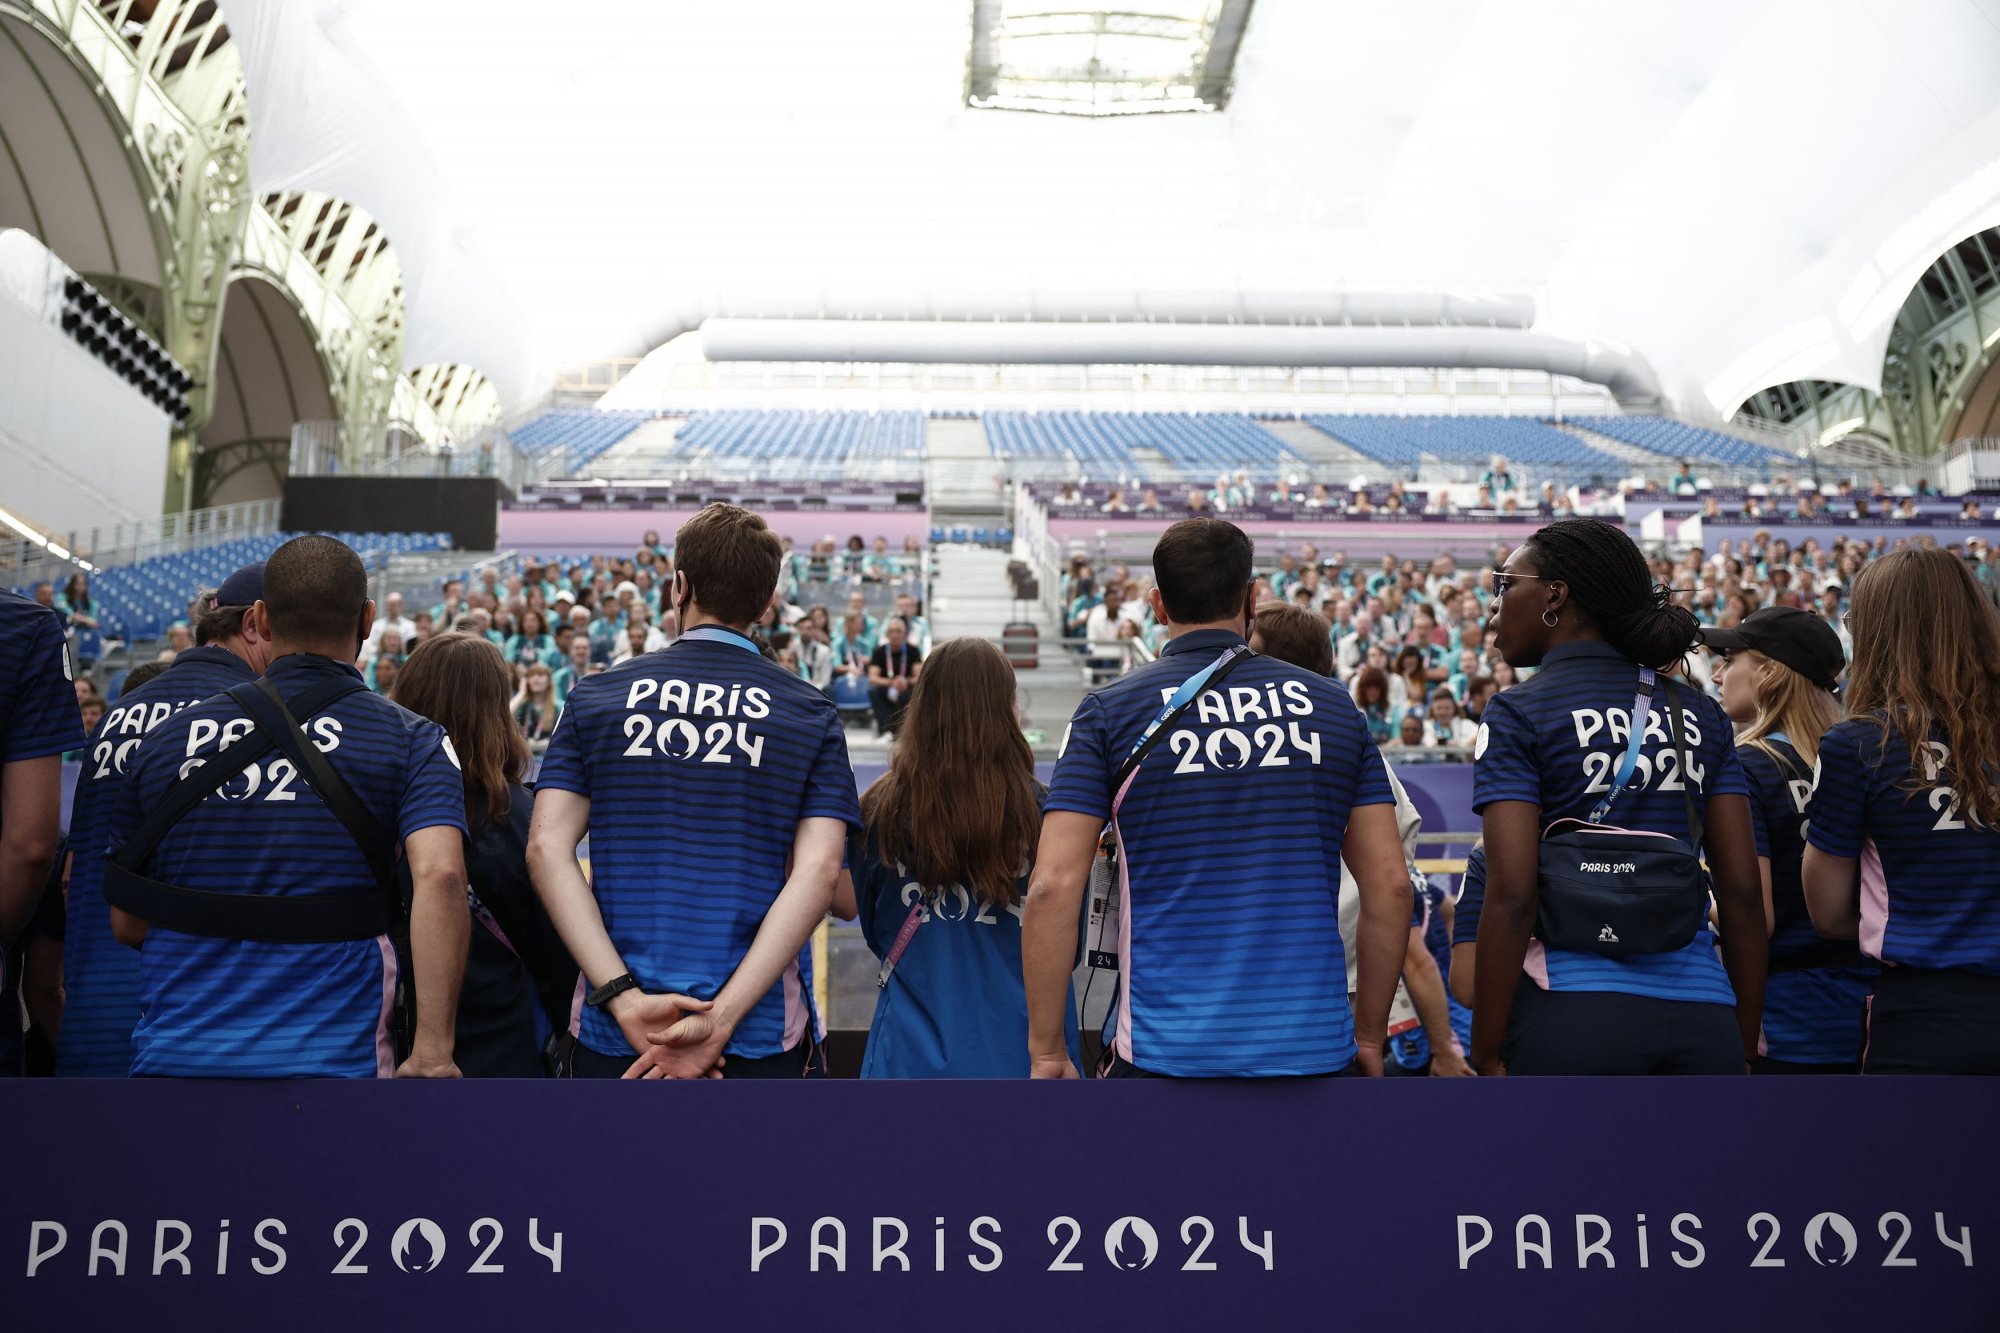 Ολυμπιακοί Αγώνες 2024: Πόσα χρήματα θα λάβουν οι φετινοί ολυμπιονίκες;